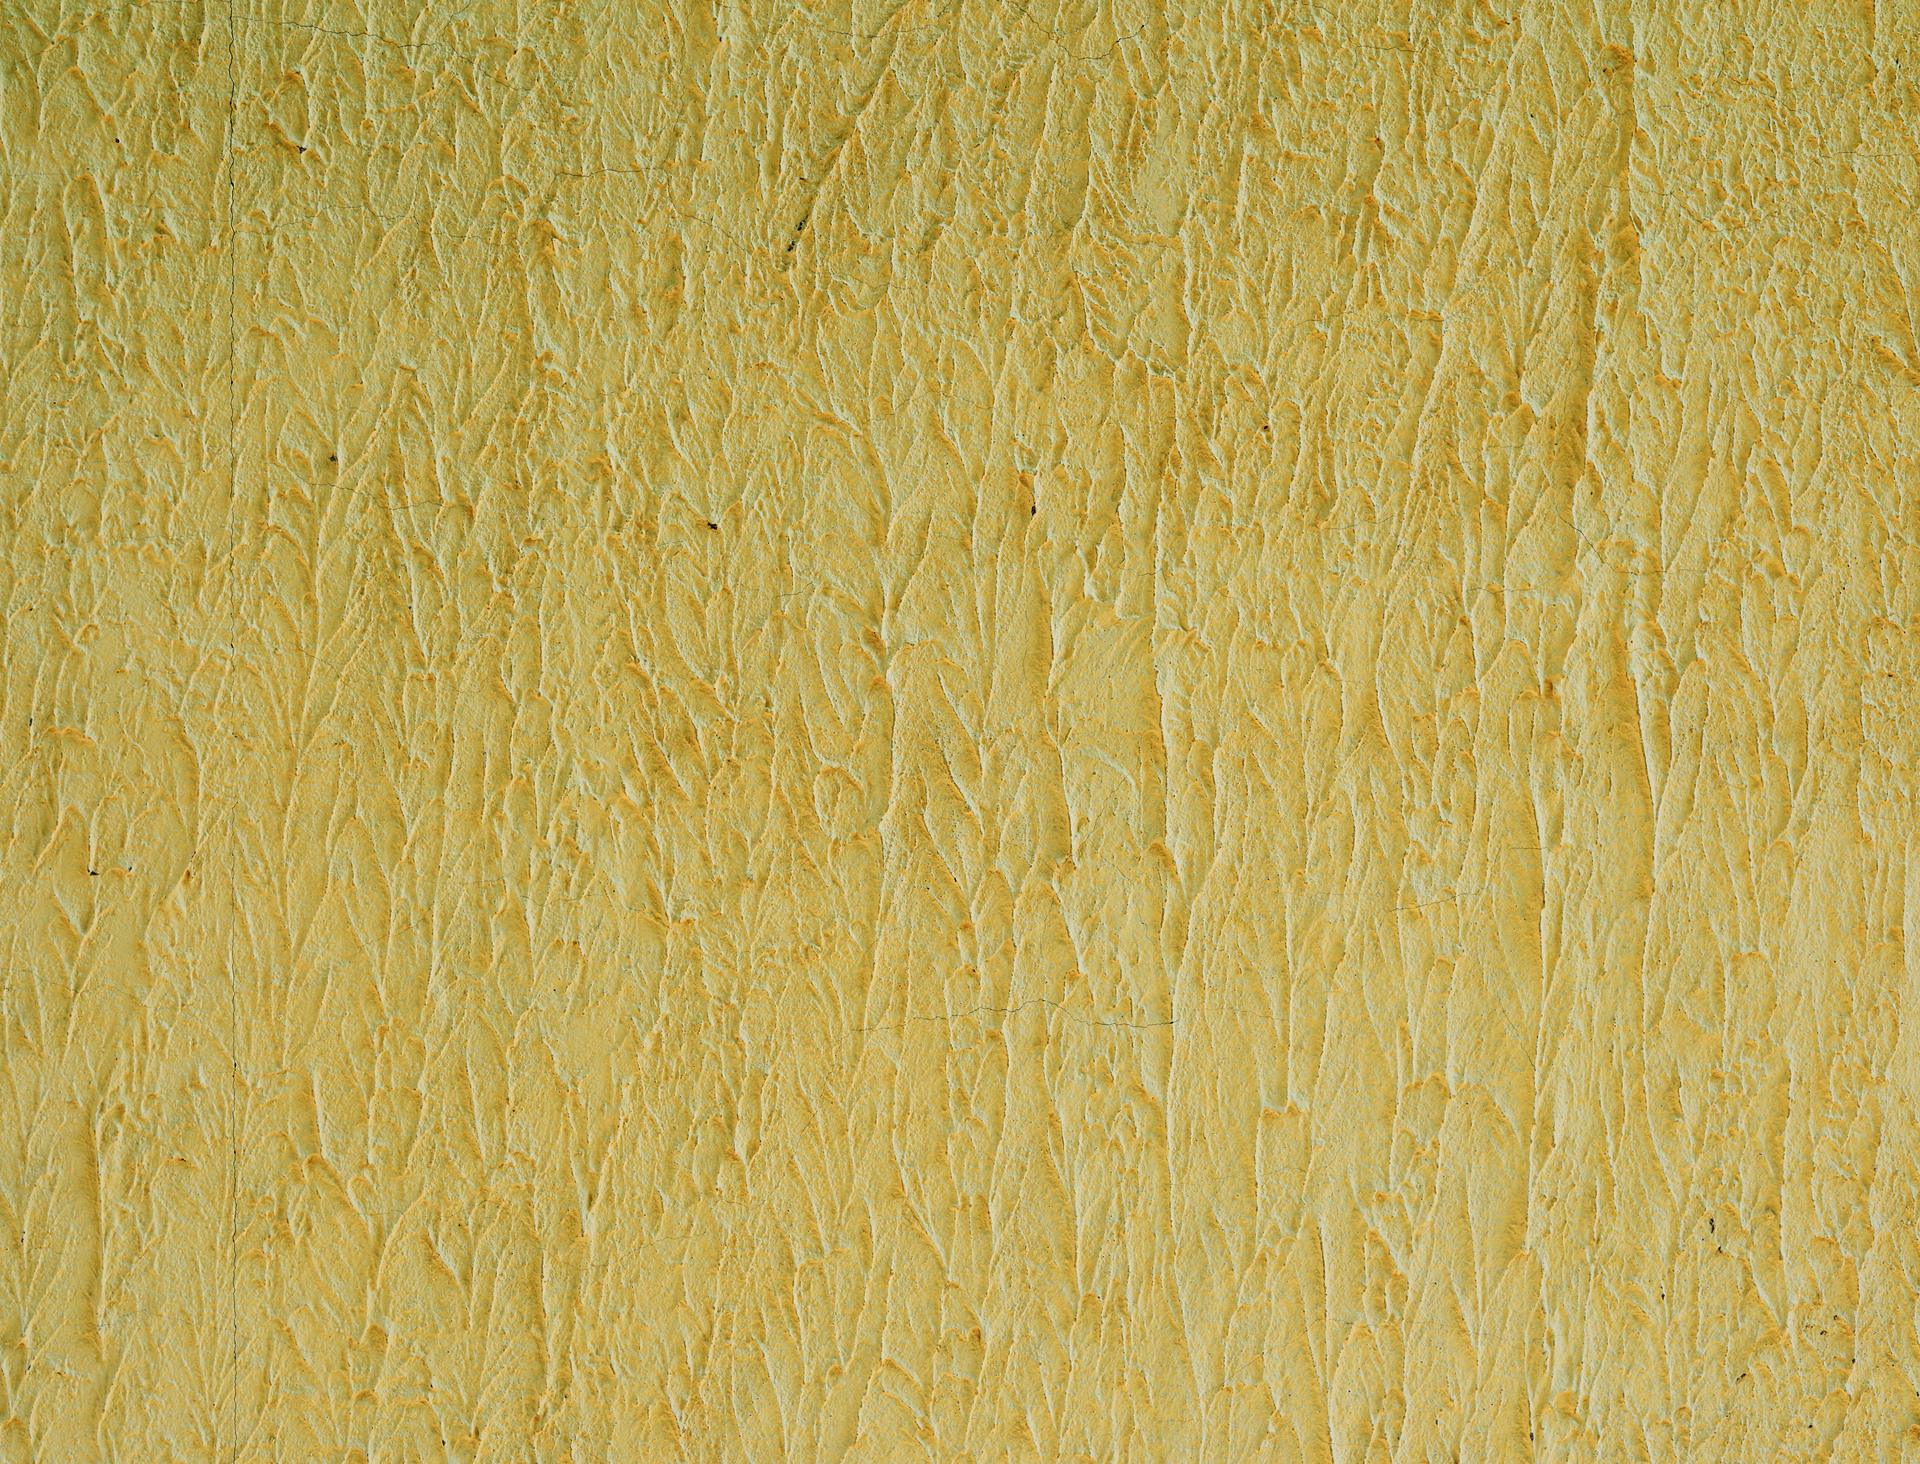 Na obrazku widzimy żółtą ścianę, która ma ciekawą strukturę. Widać, że struktura została stworzona poprzez zastosowanie nierówności i faktur na powierzchni ściany. Dzięki temu ściana nabiera charakteru i wyjątkowego stylu. Kolor żółty dodaje wnętrzu energii i pozytywnej atmosfery. Obrazek ten może kojarzyć się z nowoczesnością, kreatywnością i designem, a także z oryginalnym i odważnym podejściem do aranżacji wnętrz.